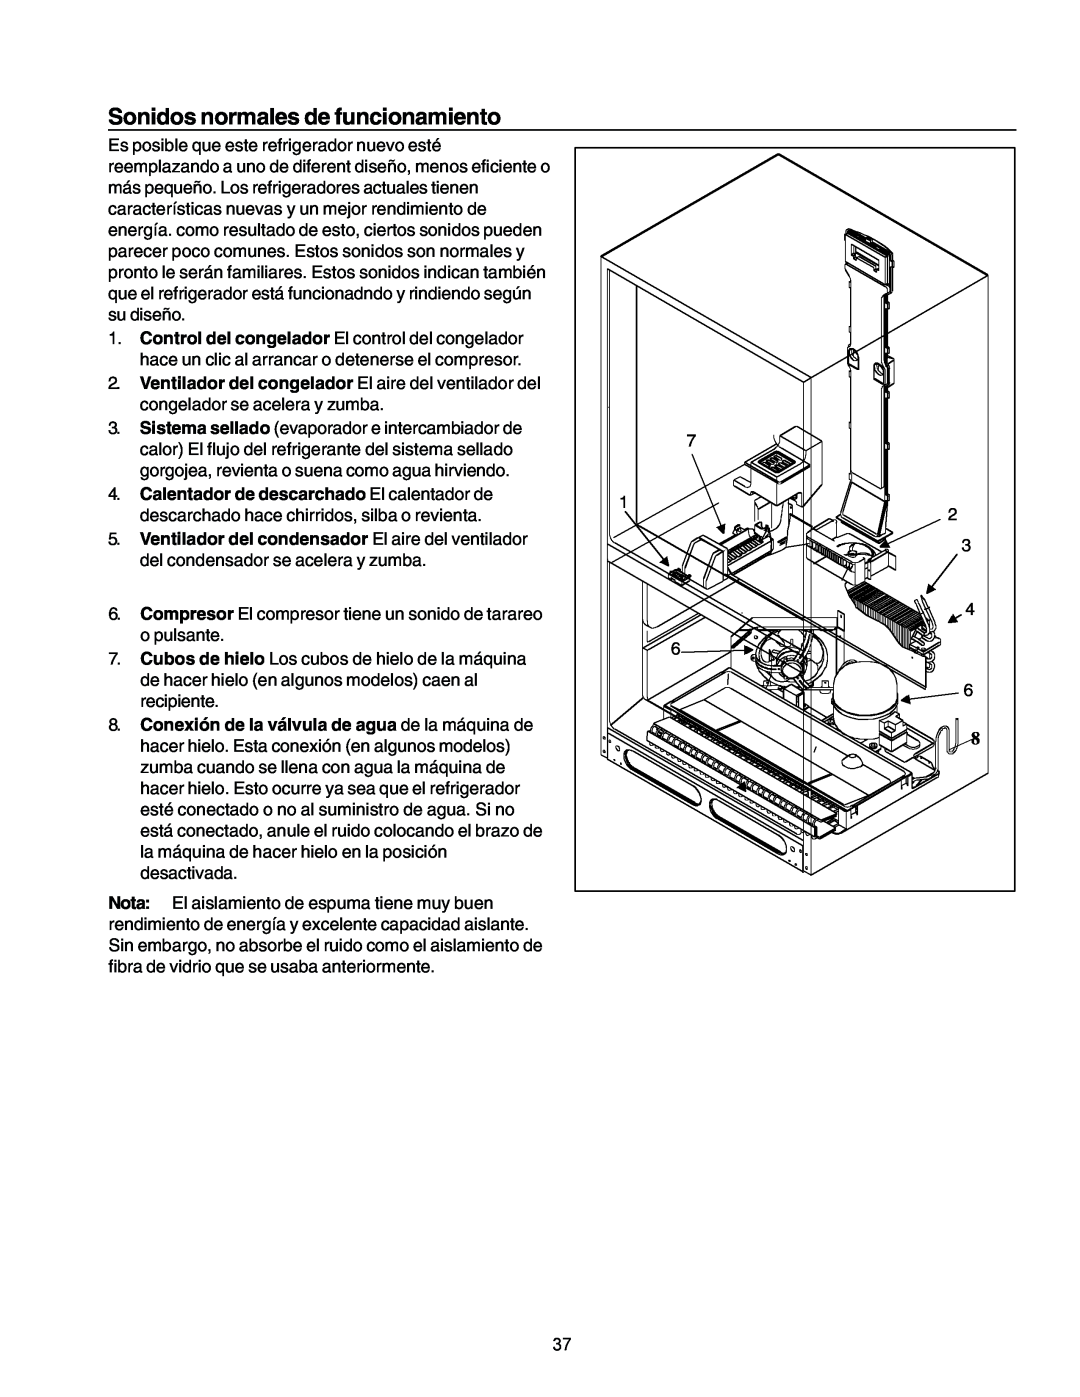 Amana IA 52204-0001 owner manual Sonidos normales de funcionamiento, Calentador de descarchado El calentador de 